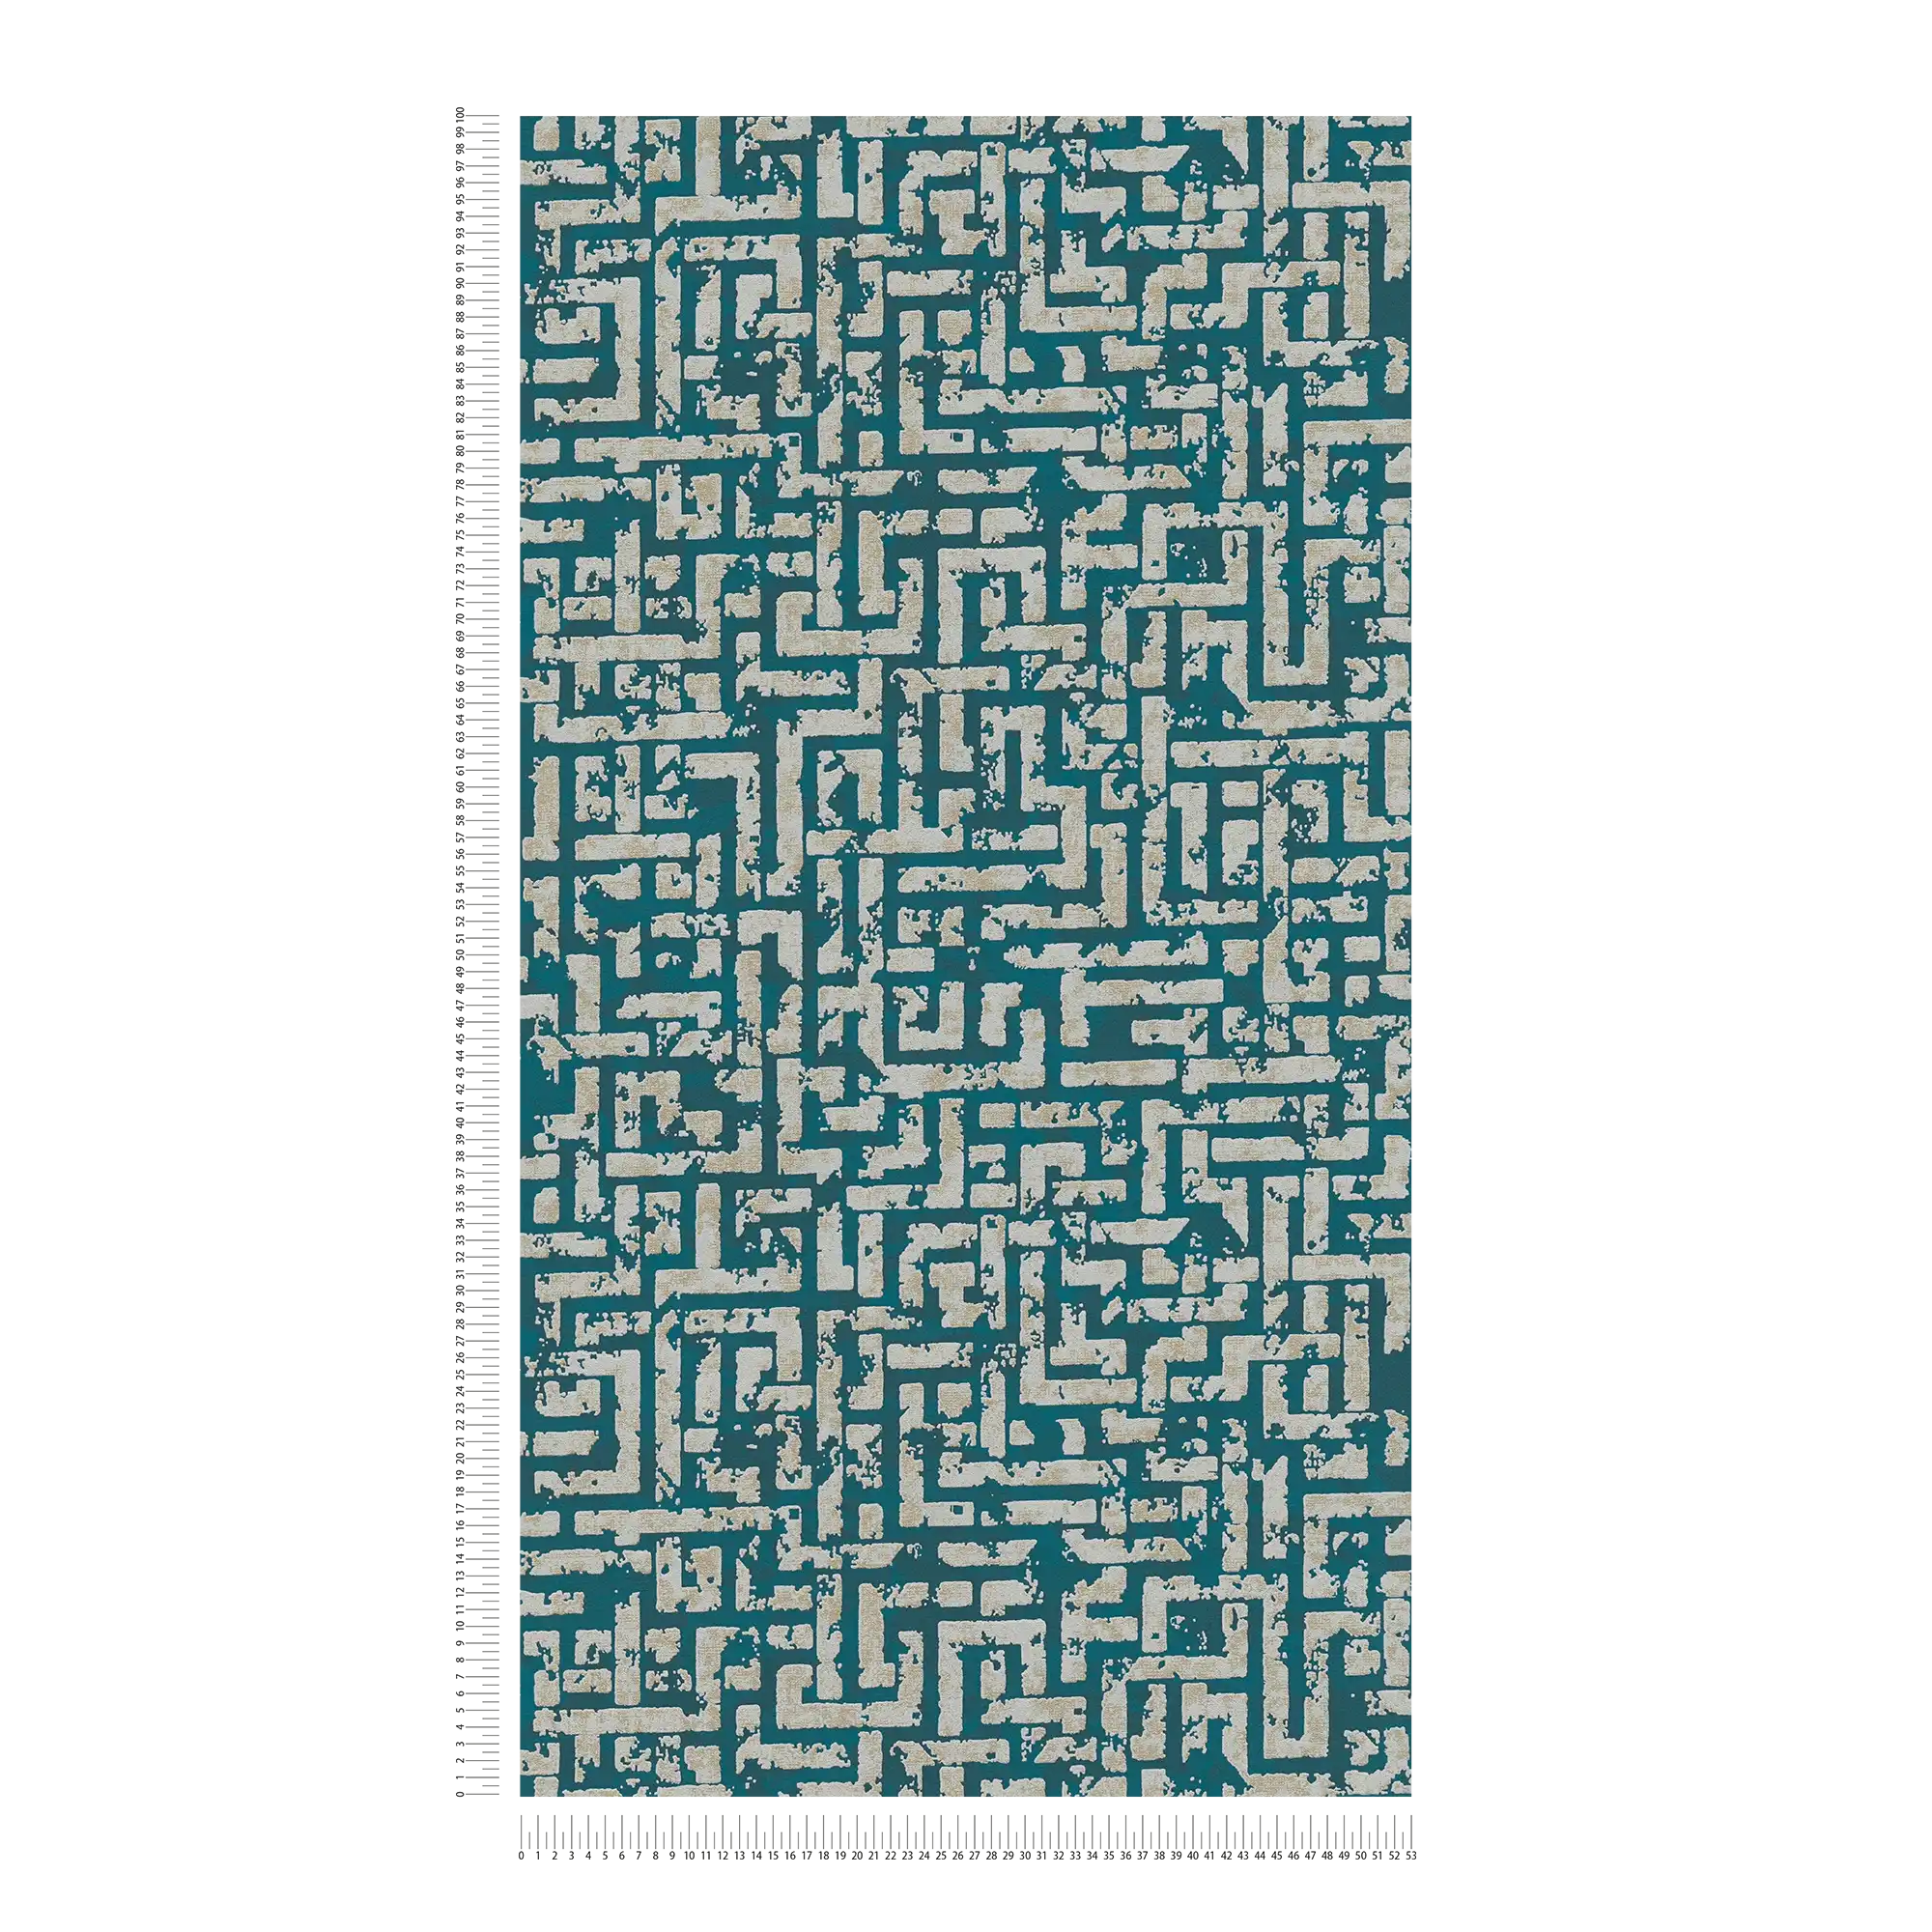             Papier peint ethnique avec design graphique en relief - bleu, vert, beige
        